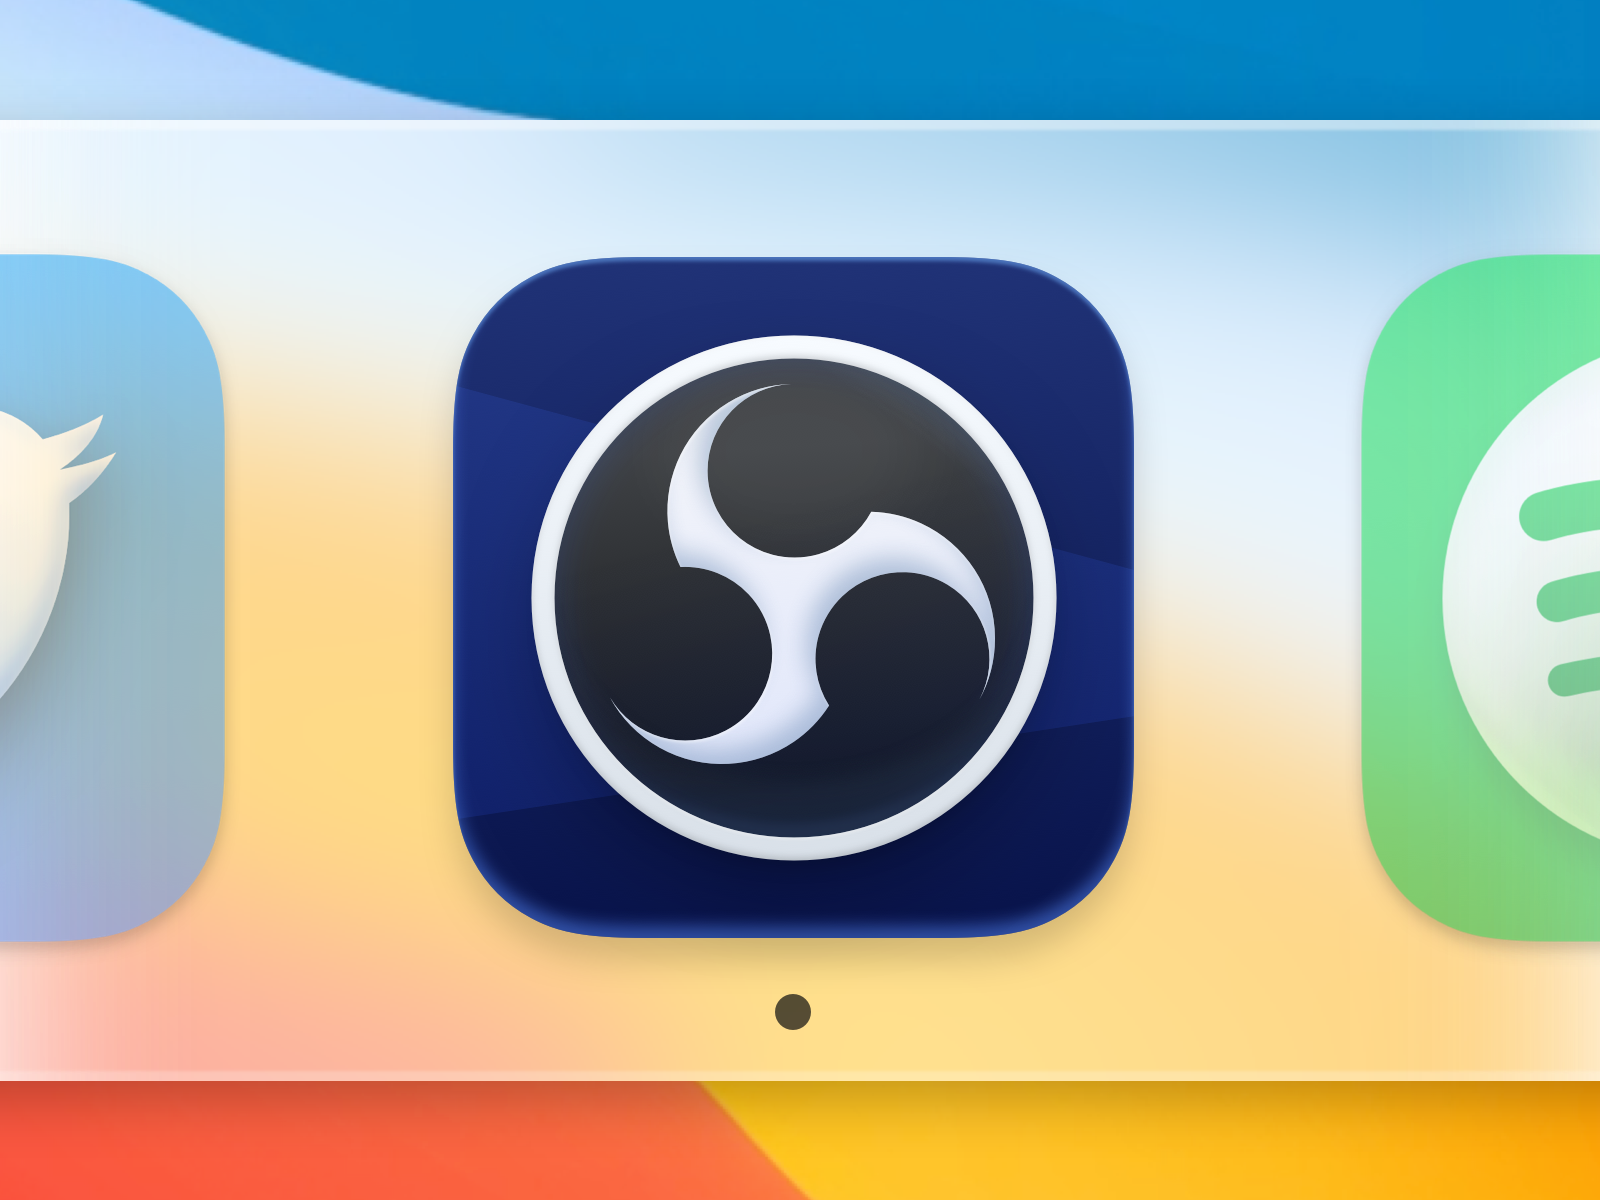 RobloxStudio macOS BigSur - Social media & Logos Icons